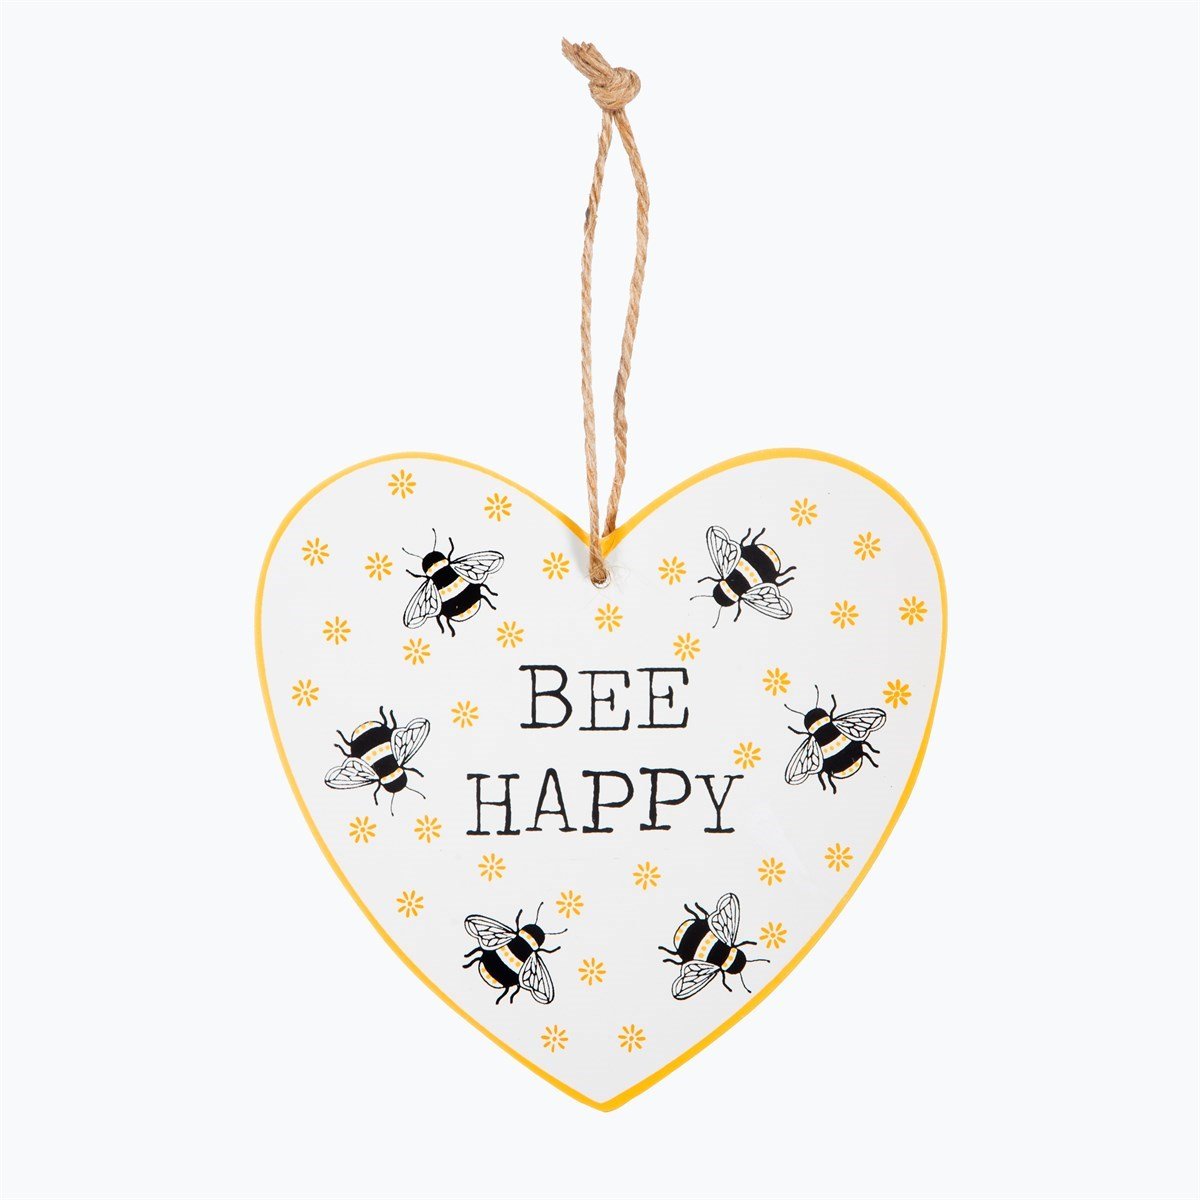 BEE HAPPY PLAQUE  from Eleanoras